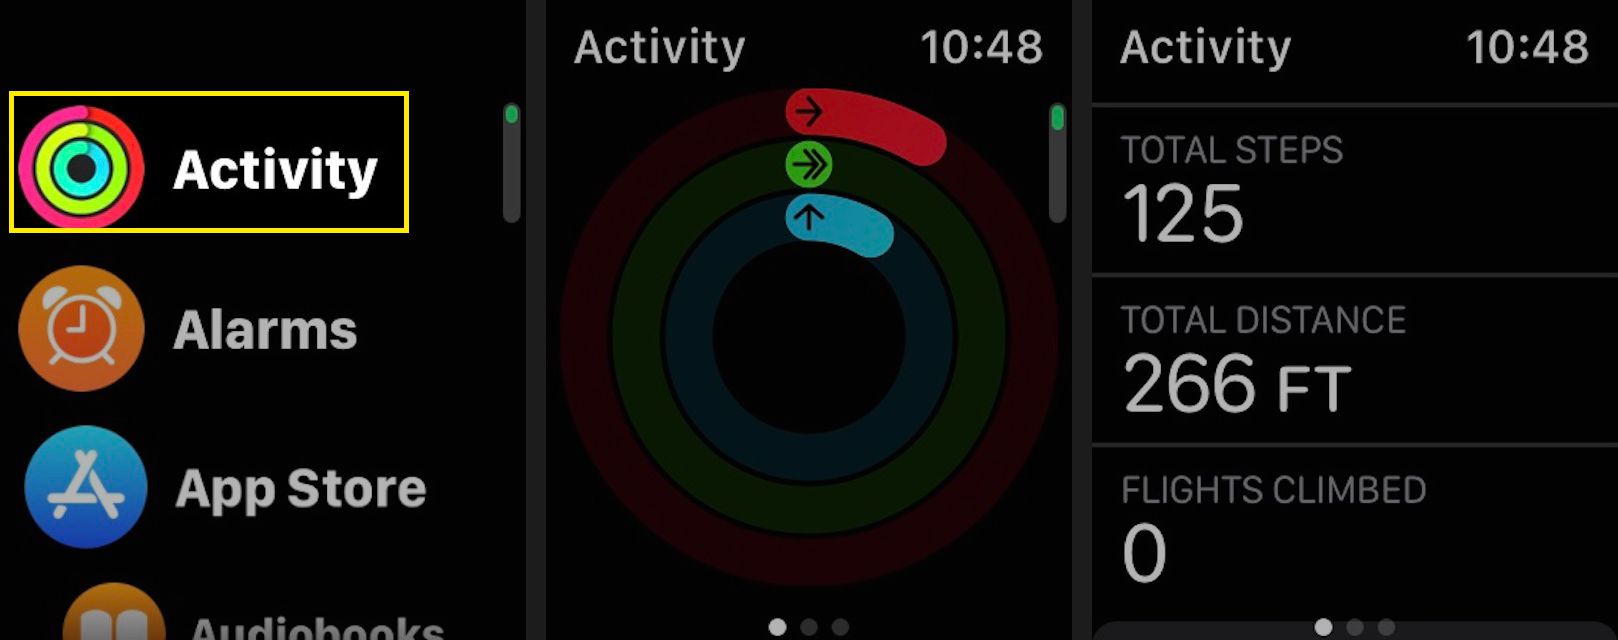 Chcete-li zkontrolovat svůj aktuální počet kroků a počet stoupání po schodech, spusťte na svém Apple Watch aplikaci Activity a poté přejděte dolů a zobrazte si aktuální celkový počet kroků, celkovou vzdálenost a vylezené lety.